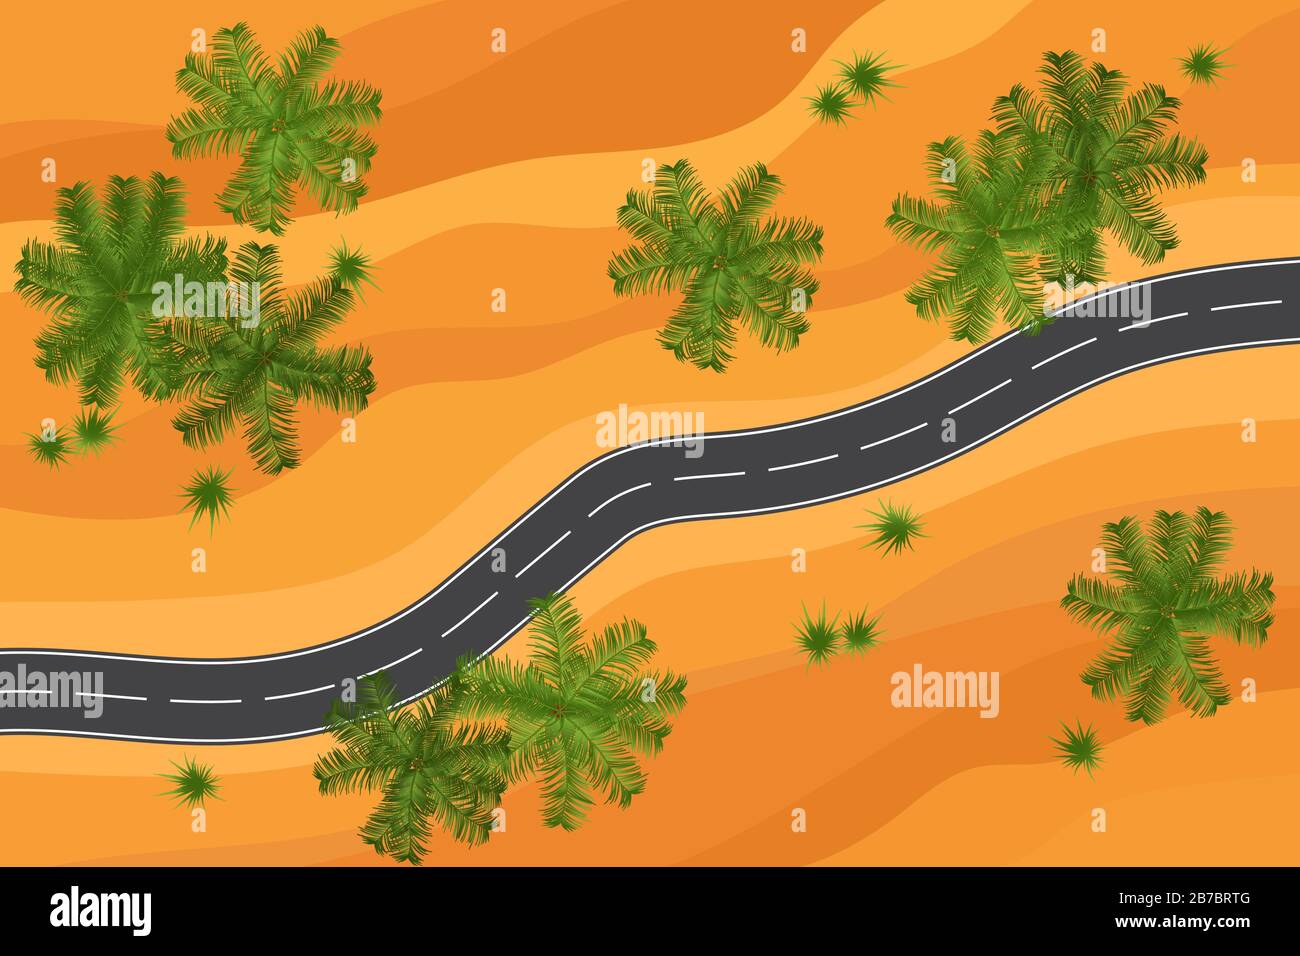 Und leere Wüsten und Palmen Straßenansicht Vektorgrafiken. Reise- oder Safarikonzept Stock Vektor